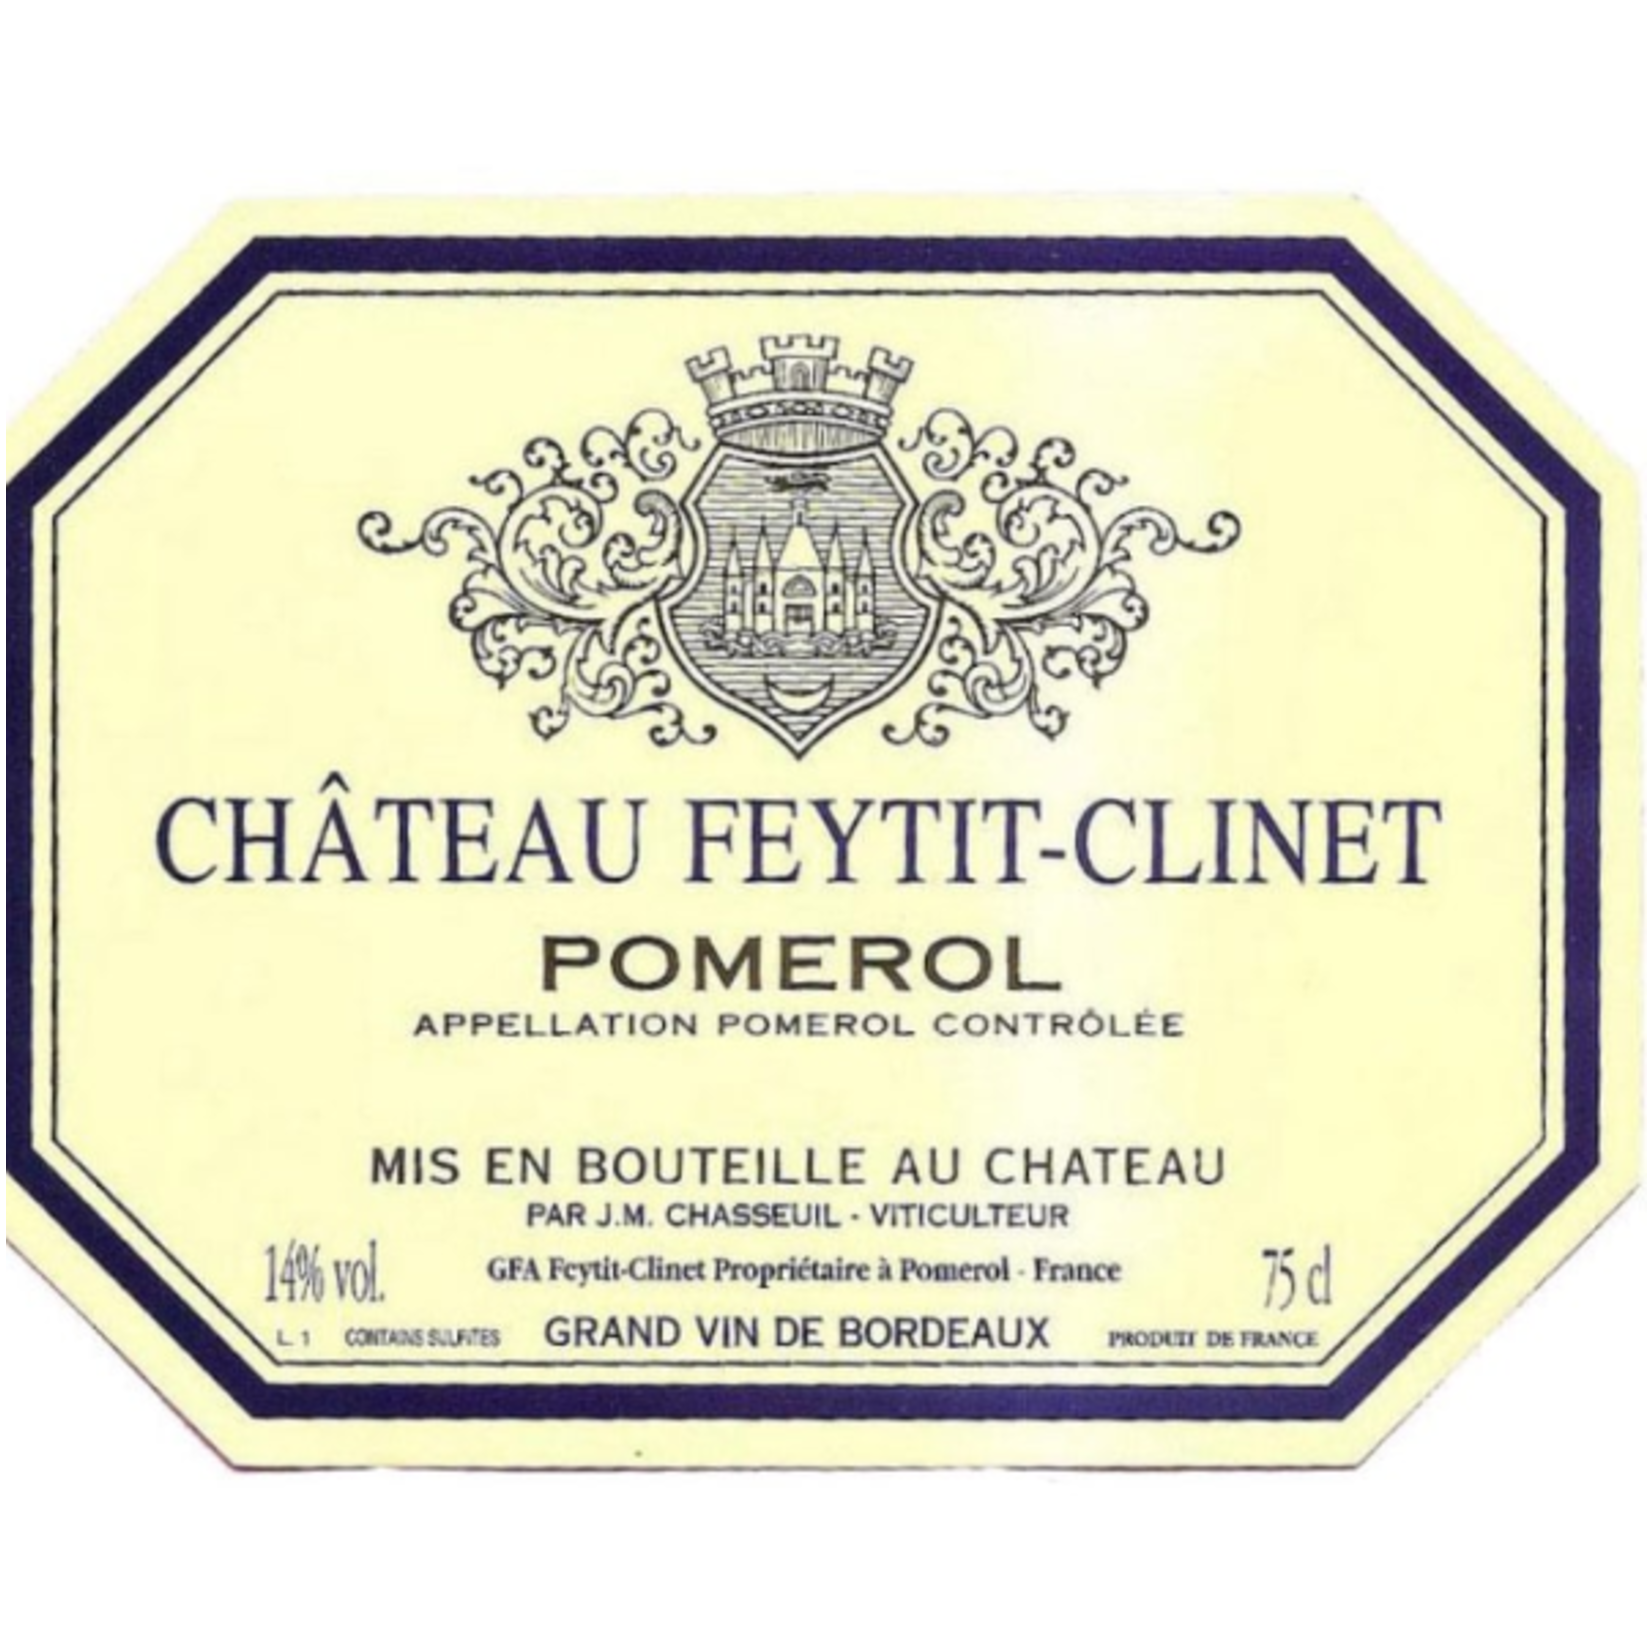 Feytit-Clinet Chateau Feytit-Clinet Pomerol 2018,  France